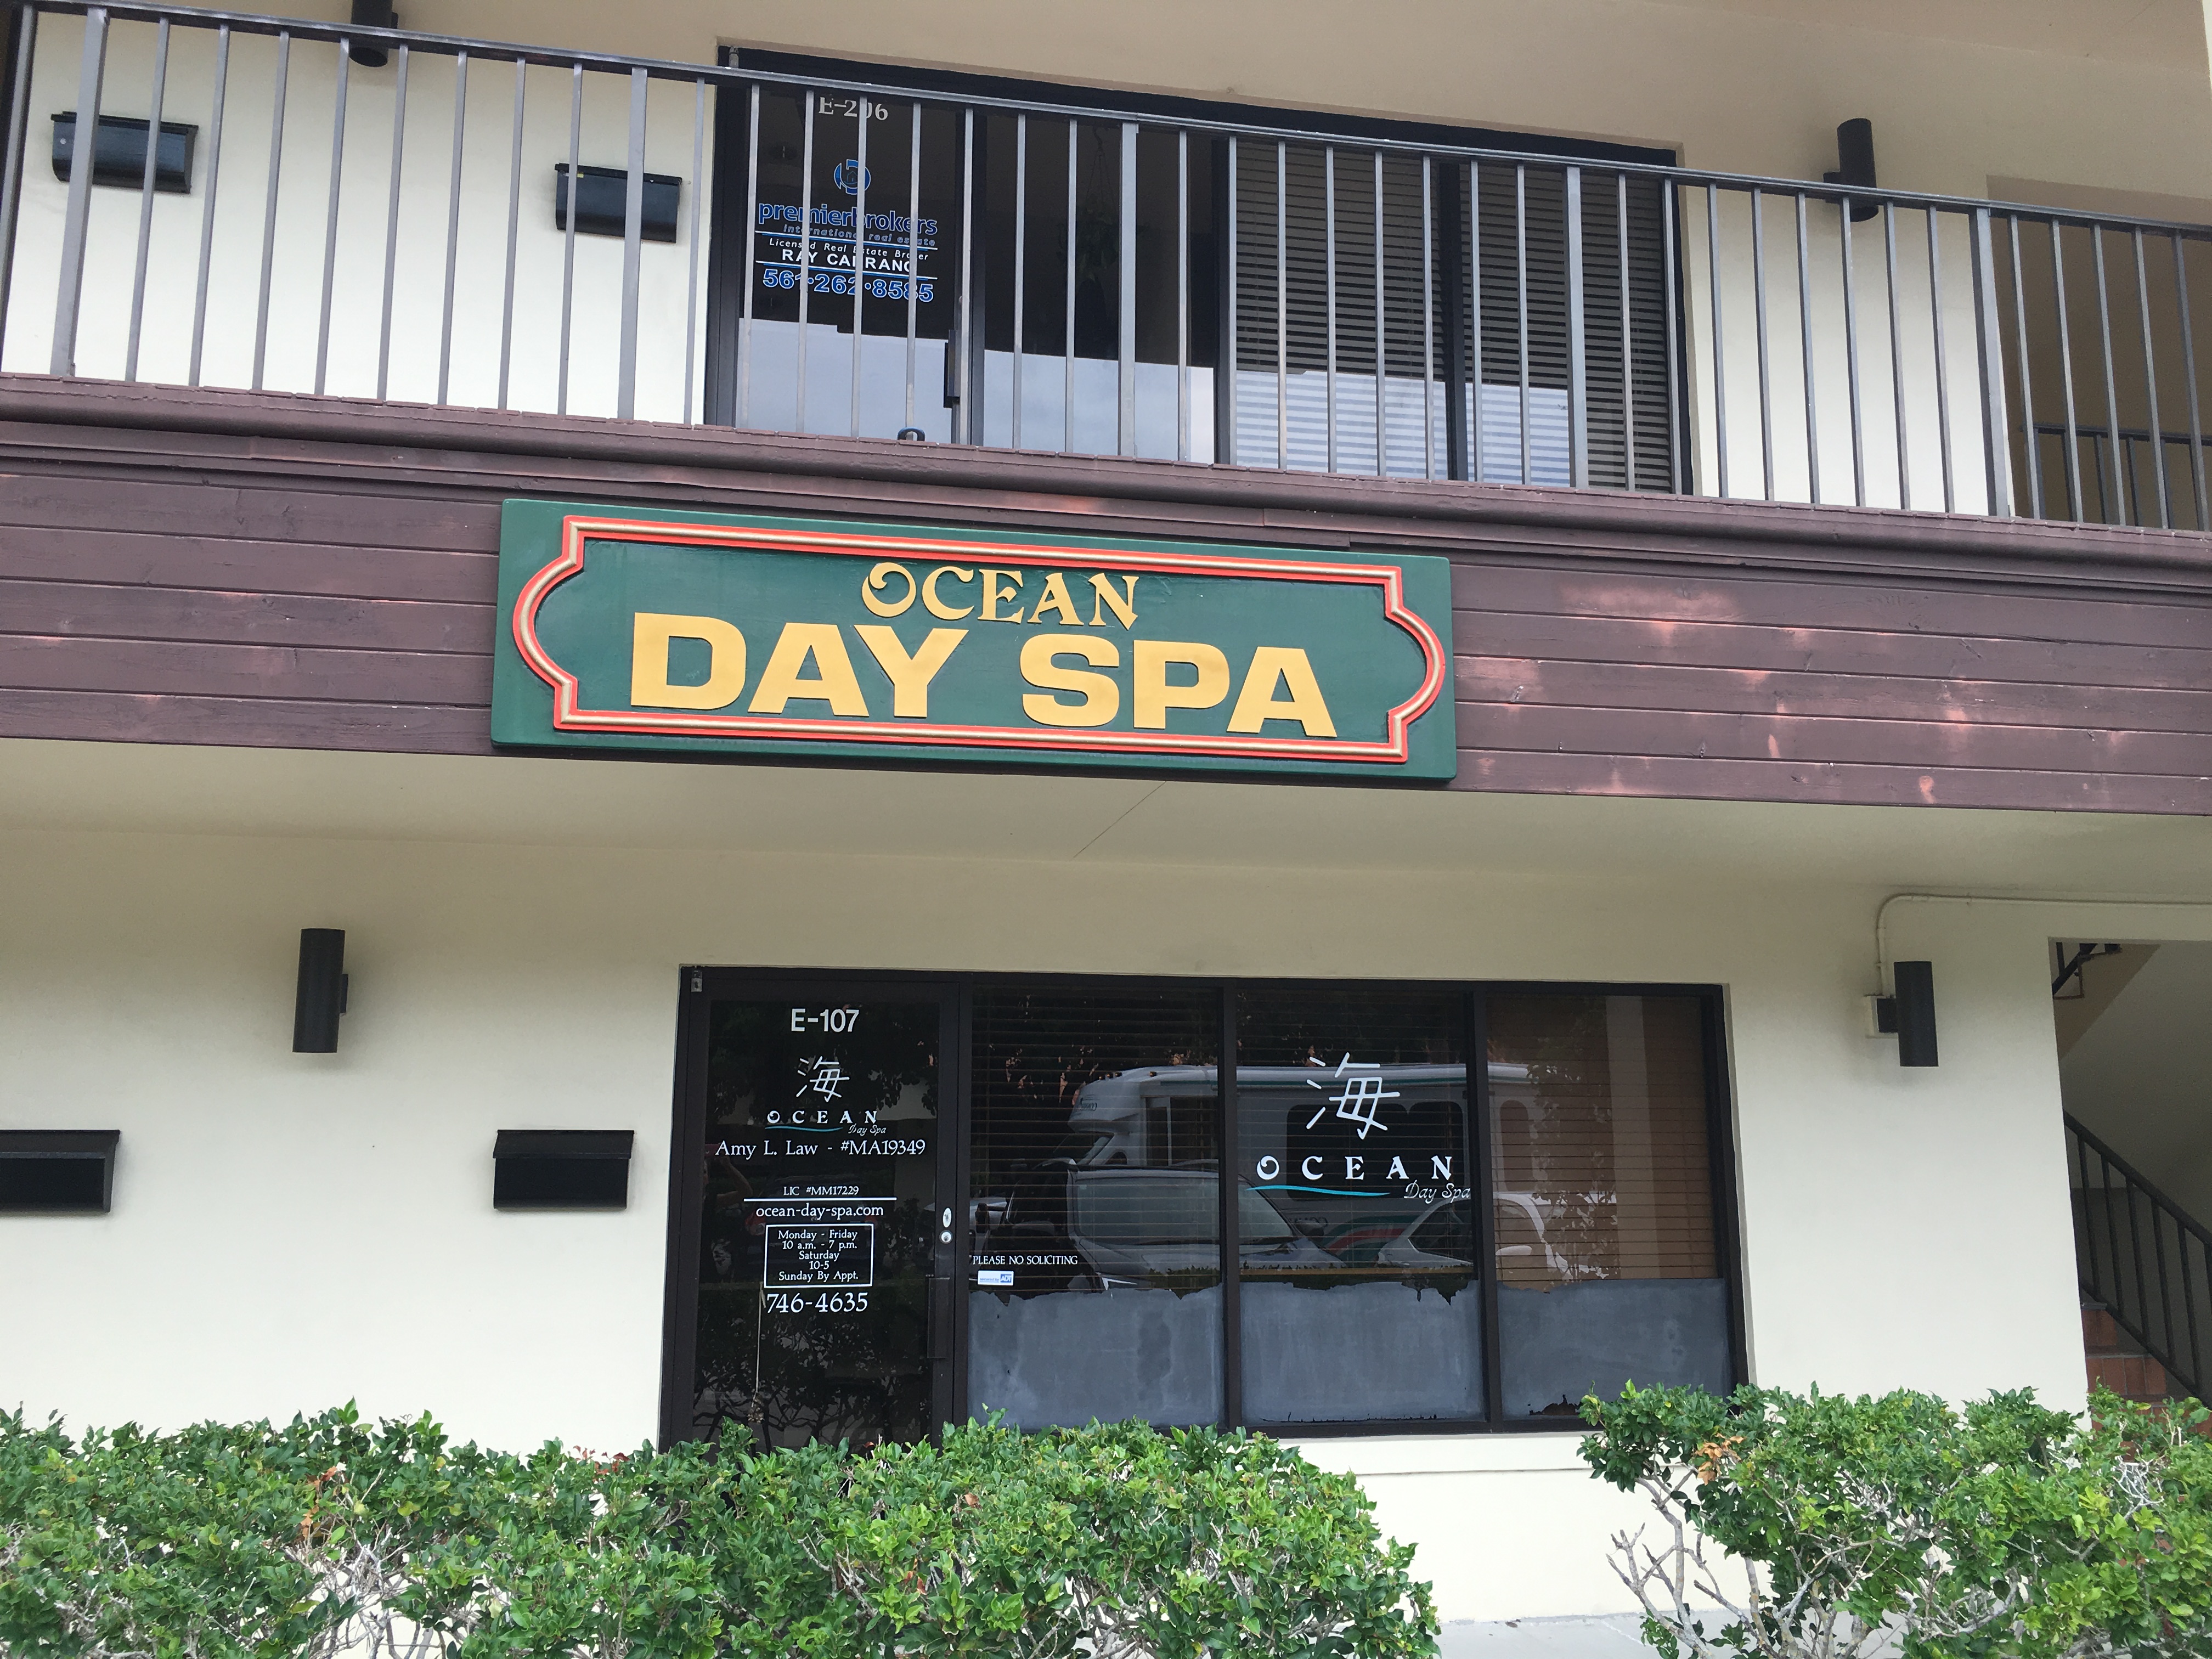 Ocean day spa, Jupiter Florida (FL)